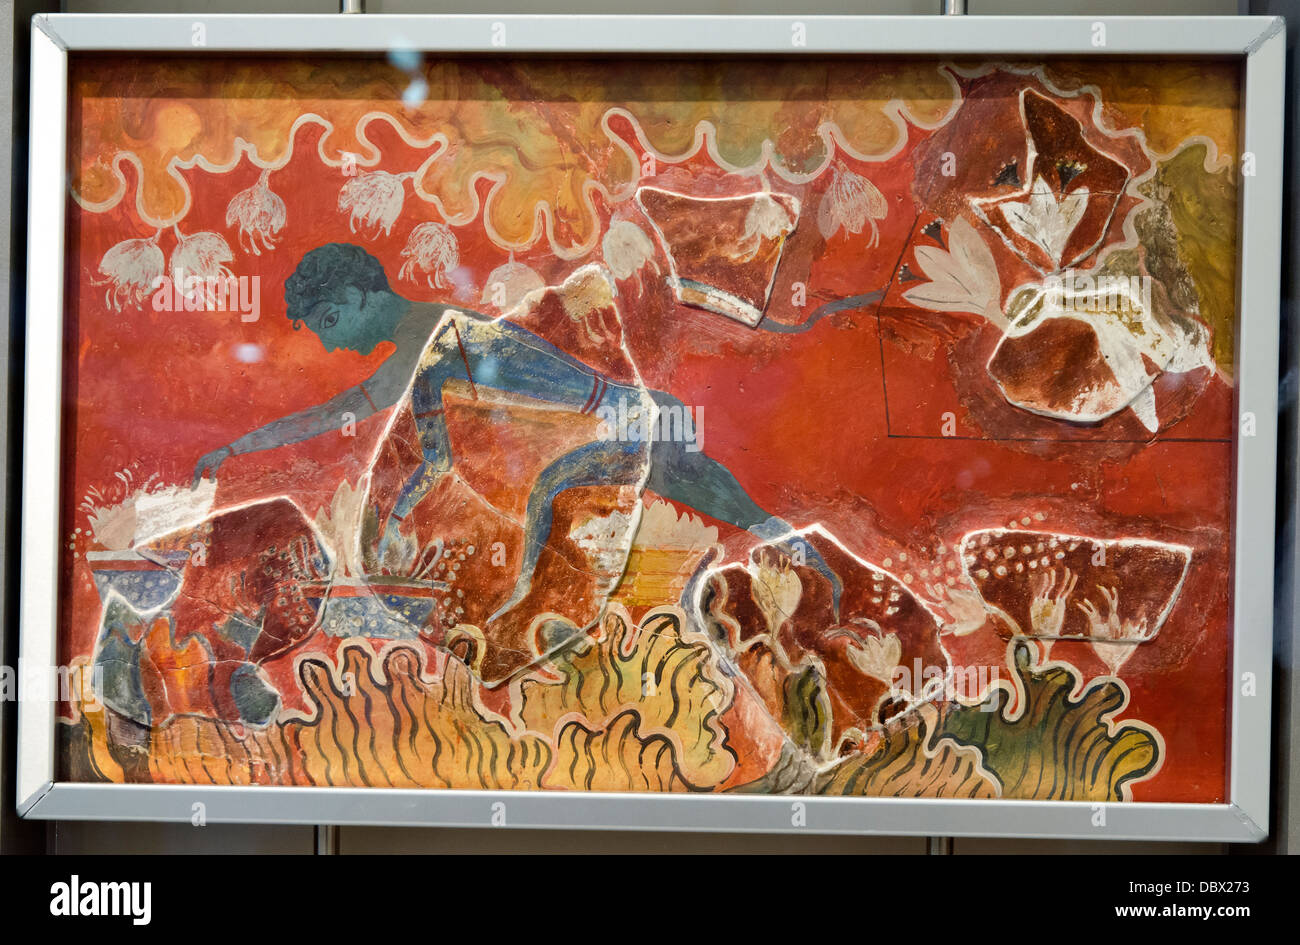 Le 'Saffron cueilleurs' ou 'Blue Boy' est considéré comme l'une des plus anciennes peintures murales de Knossos. Knossos, le palais, Neopalatian (période 1700-1450 avant J.-C.). Musée Archéologique d'Héraklion - Crète, Grèce Banque D'Images